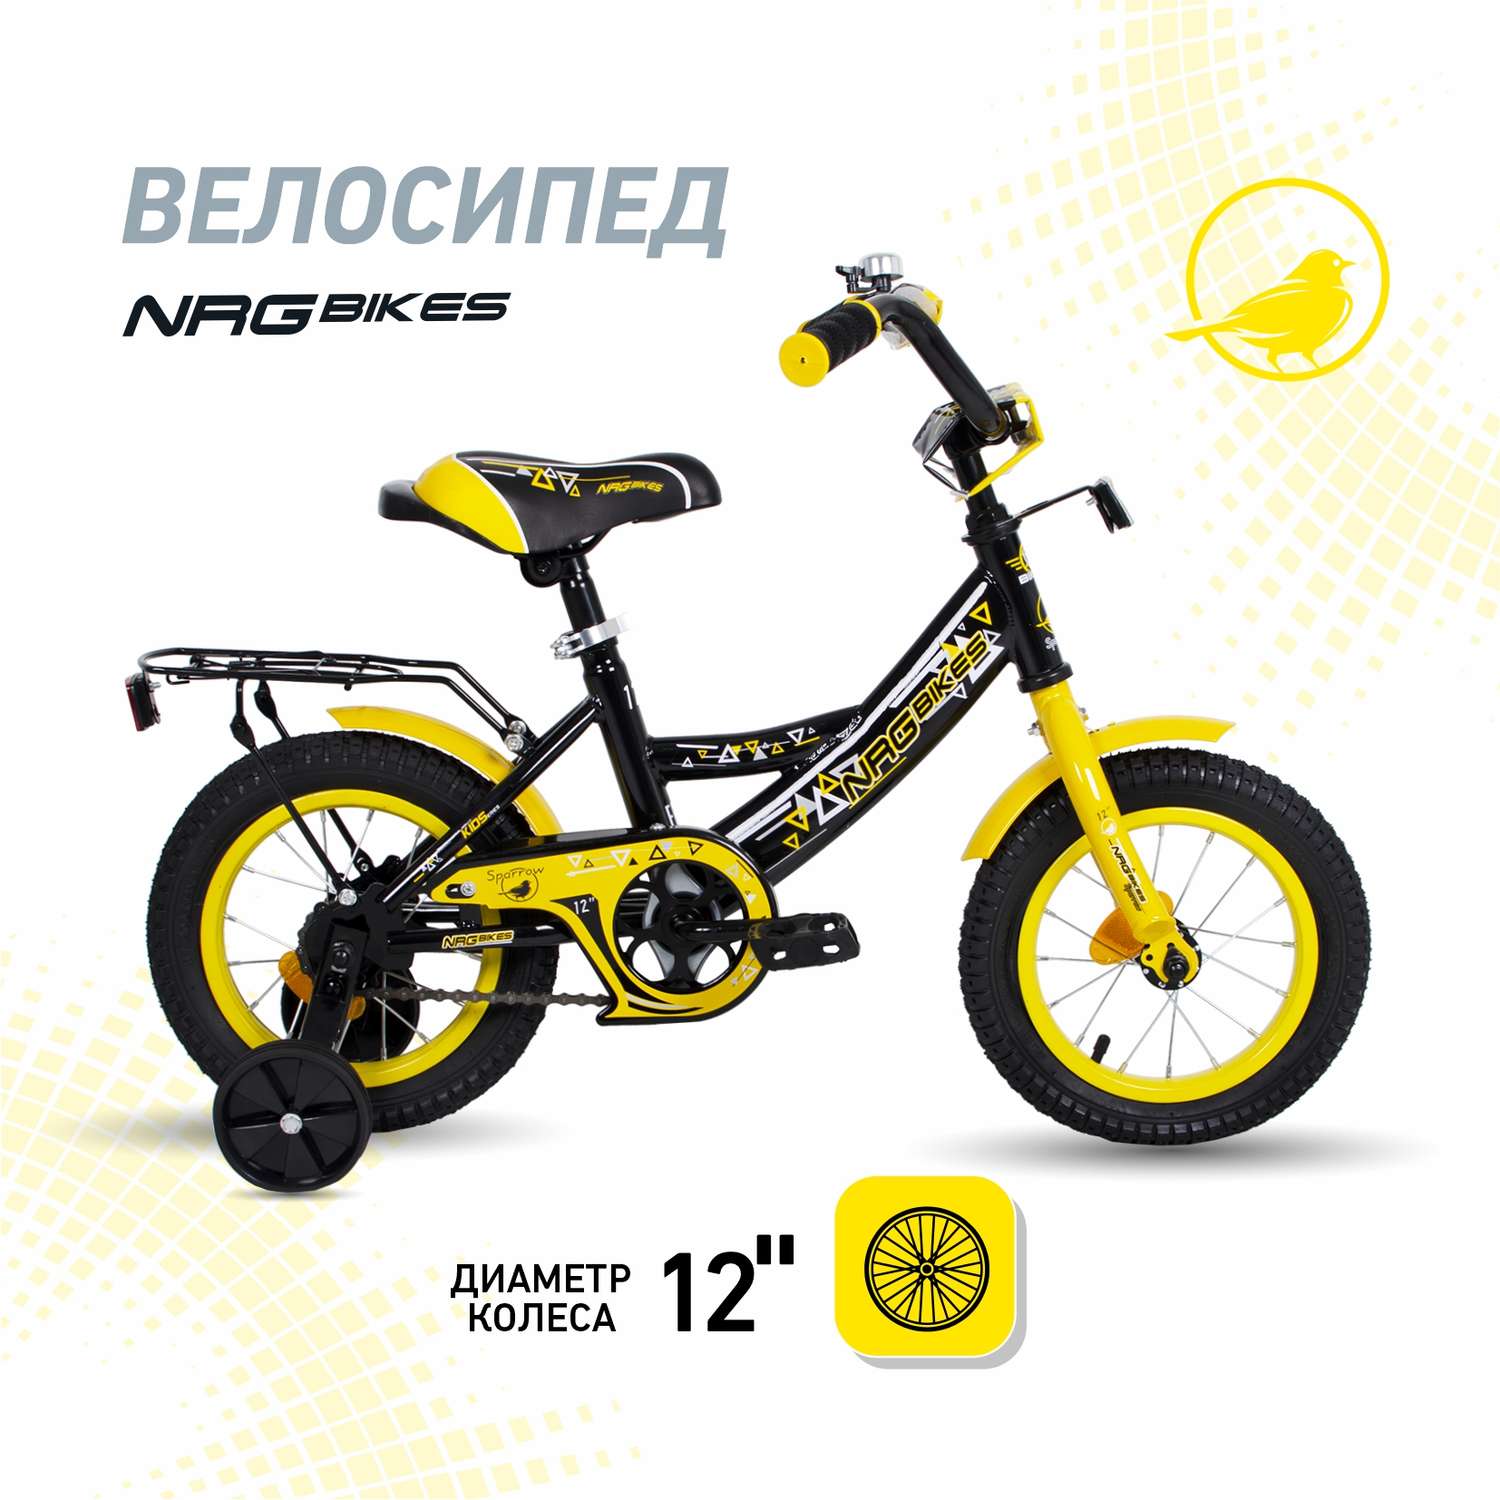 Велосипед NRG BIKES SPARROW 12 black-yellow - фото 1